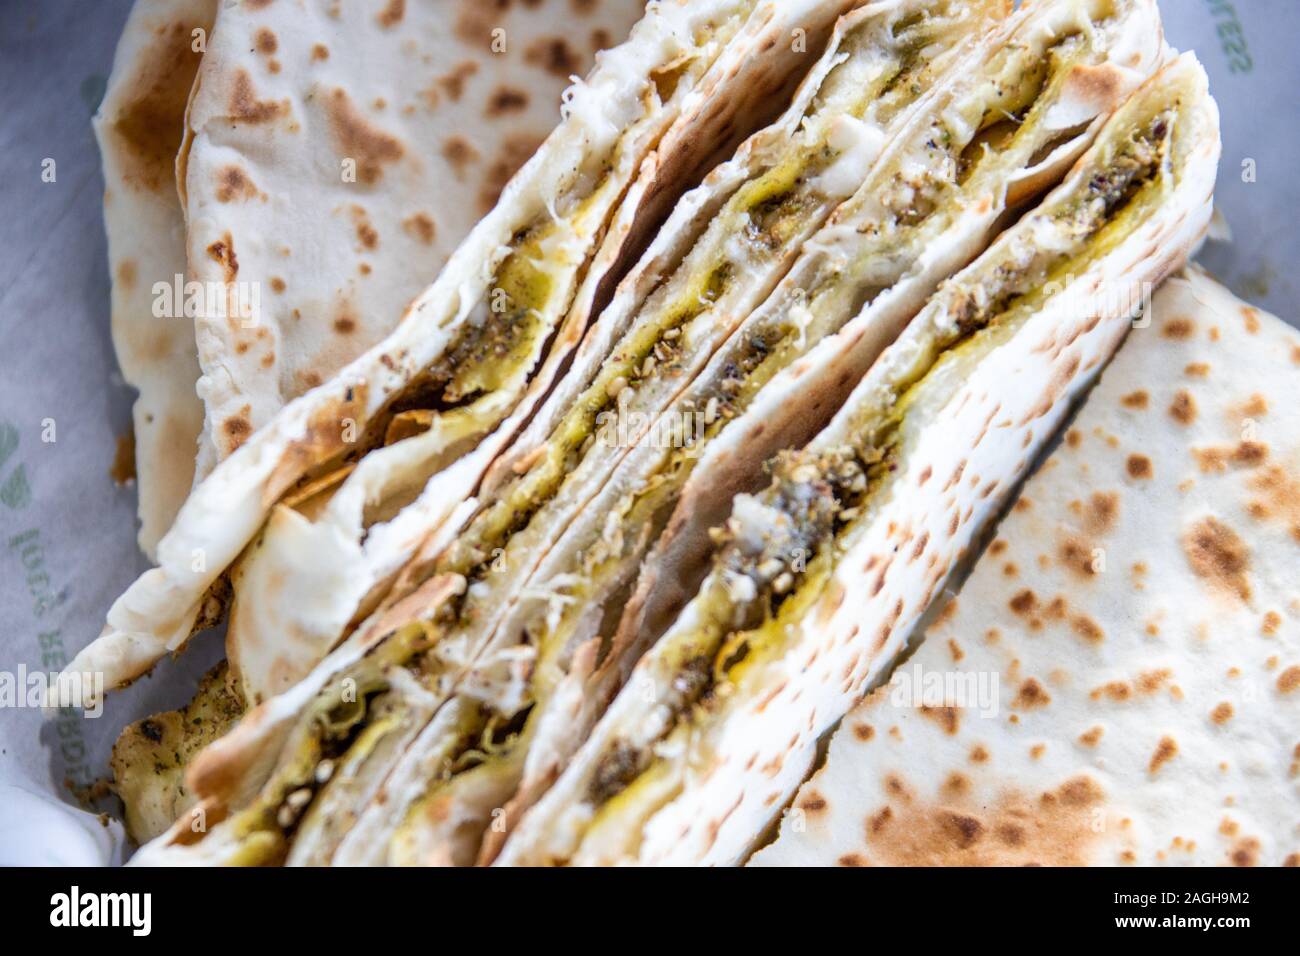 Zaat und Käse, Zaatar w Zeit Restaurant, Beirut, Libanon Stockfoto